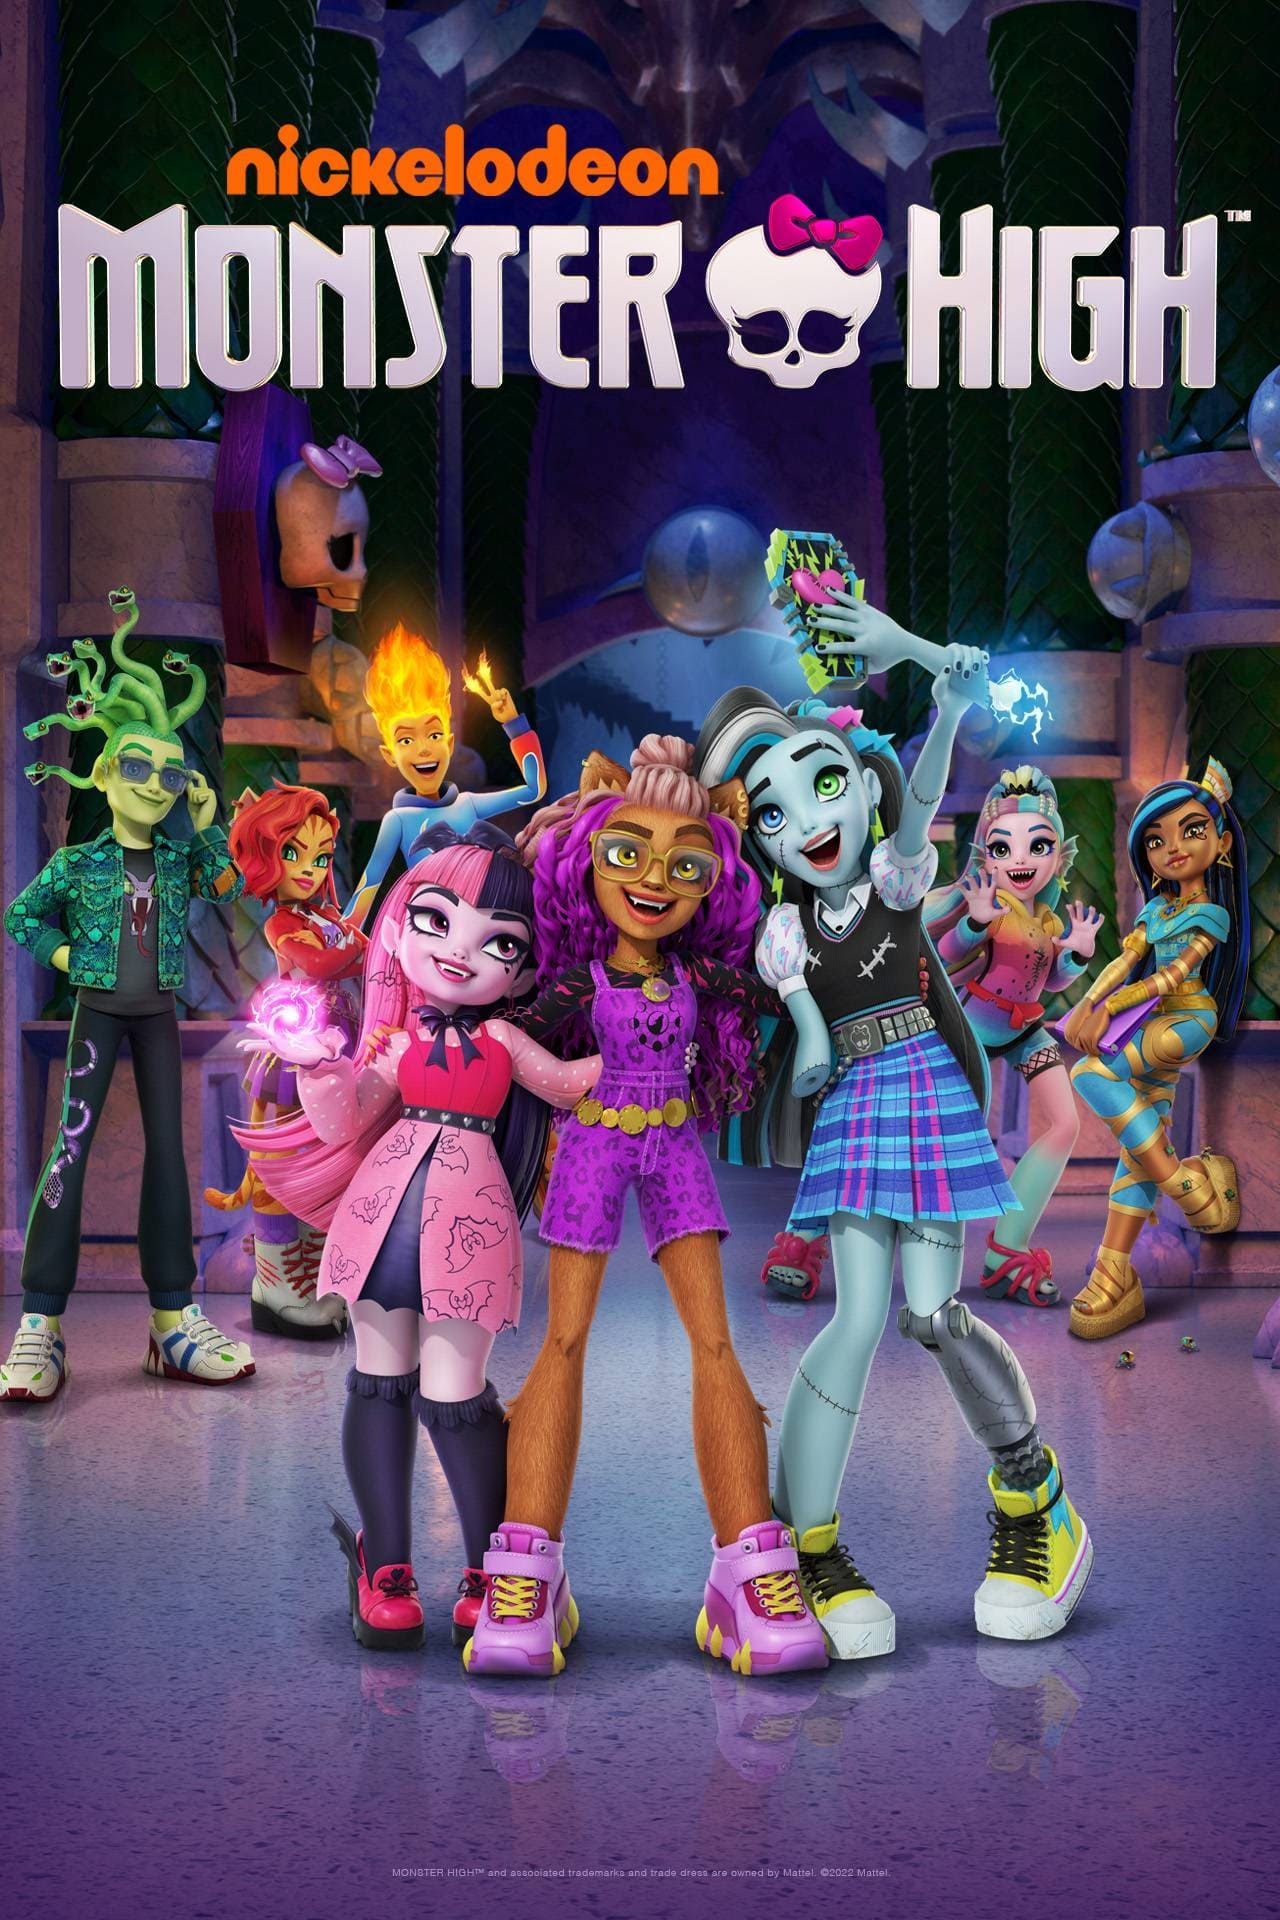 Categoria:Bonecas, Monster High Wiki